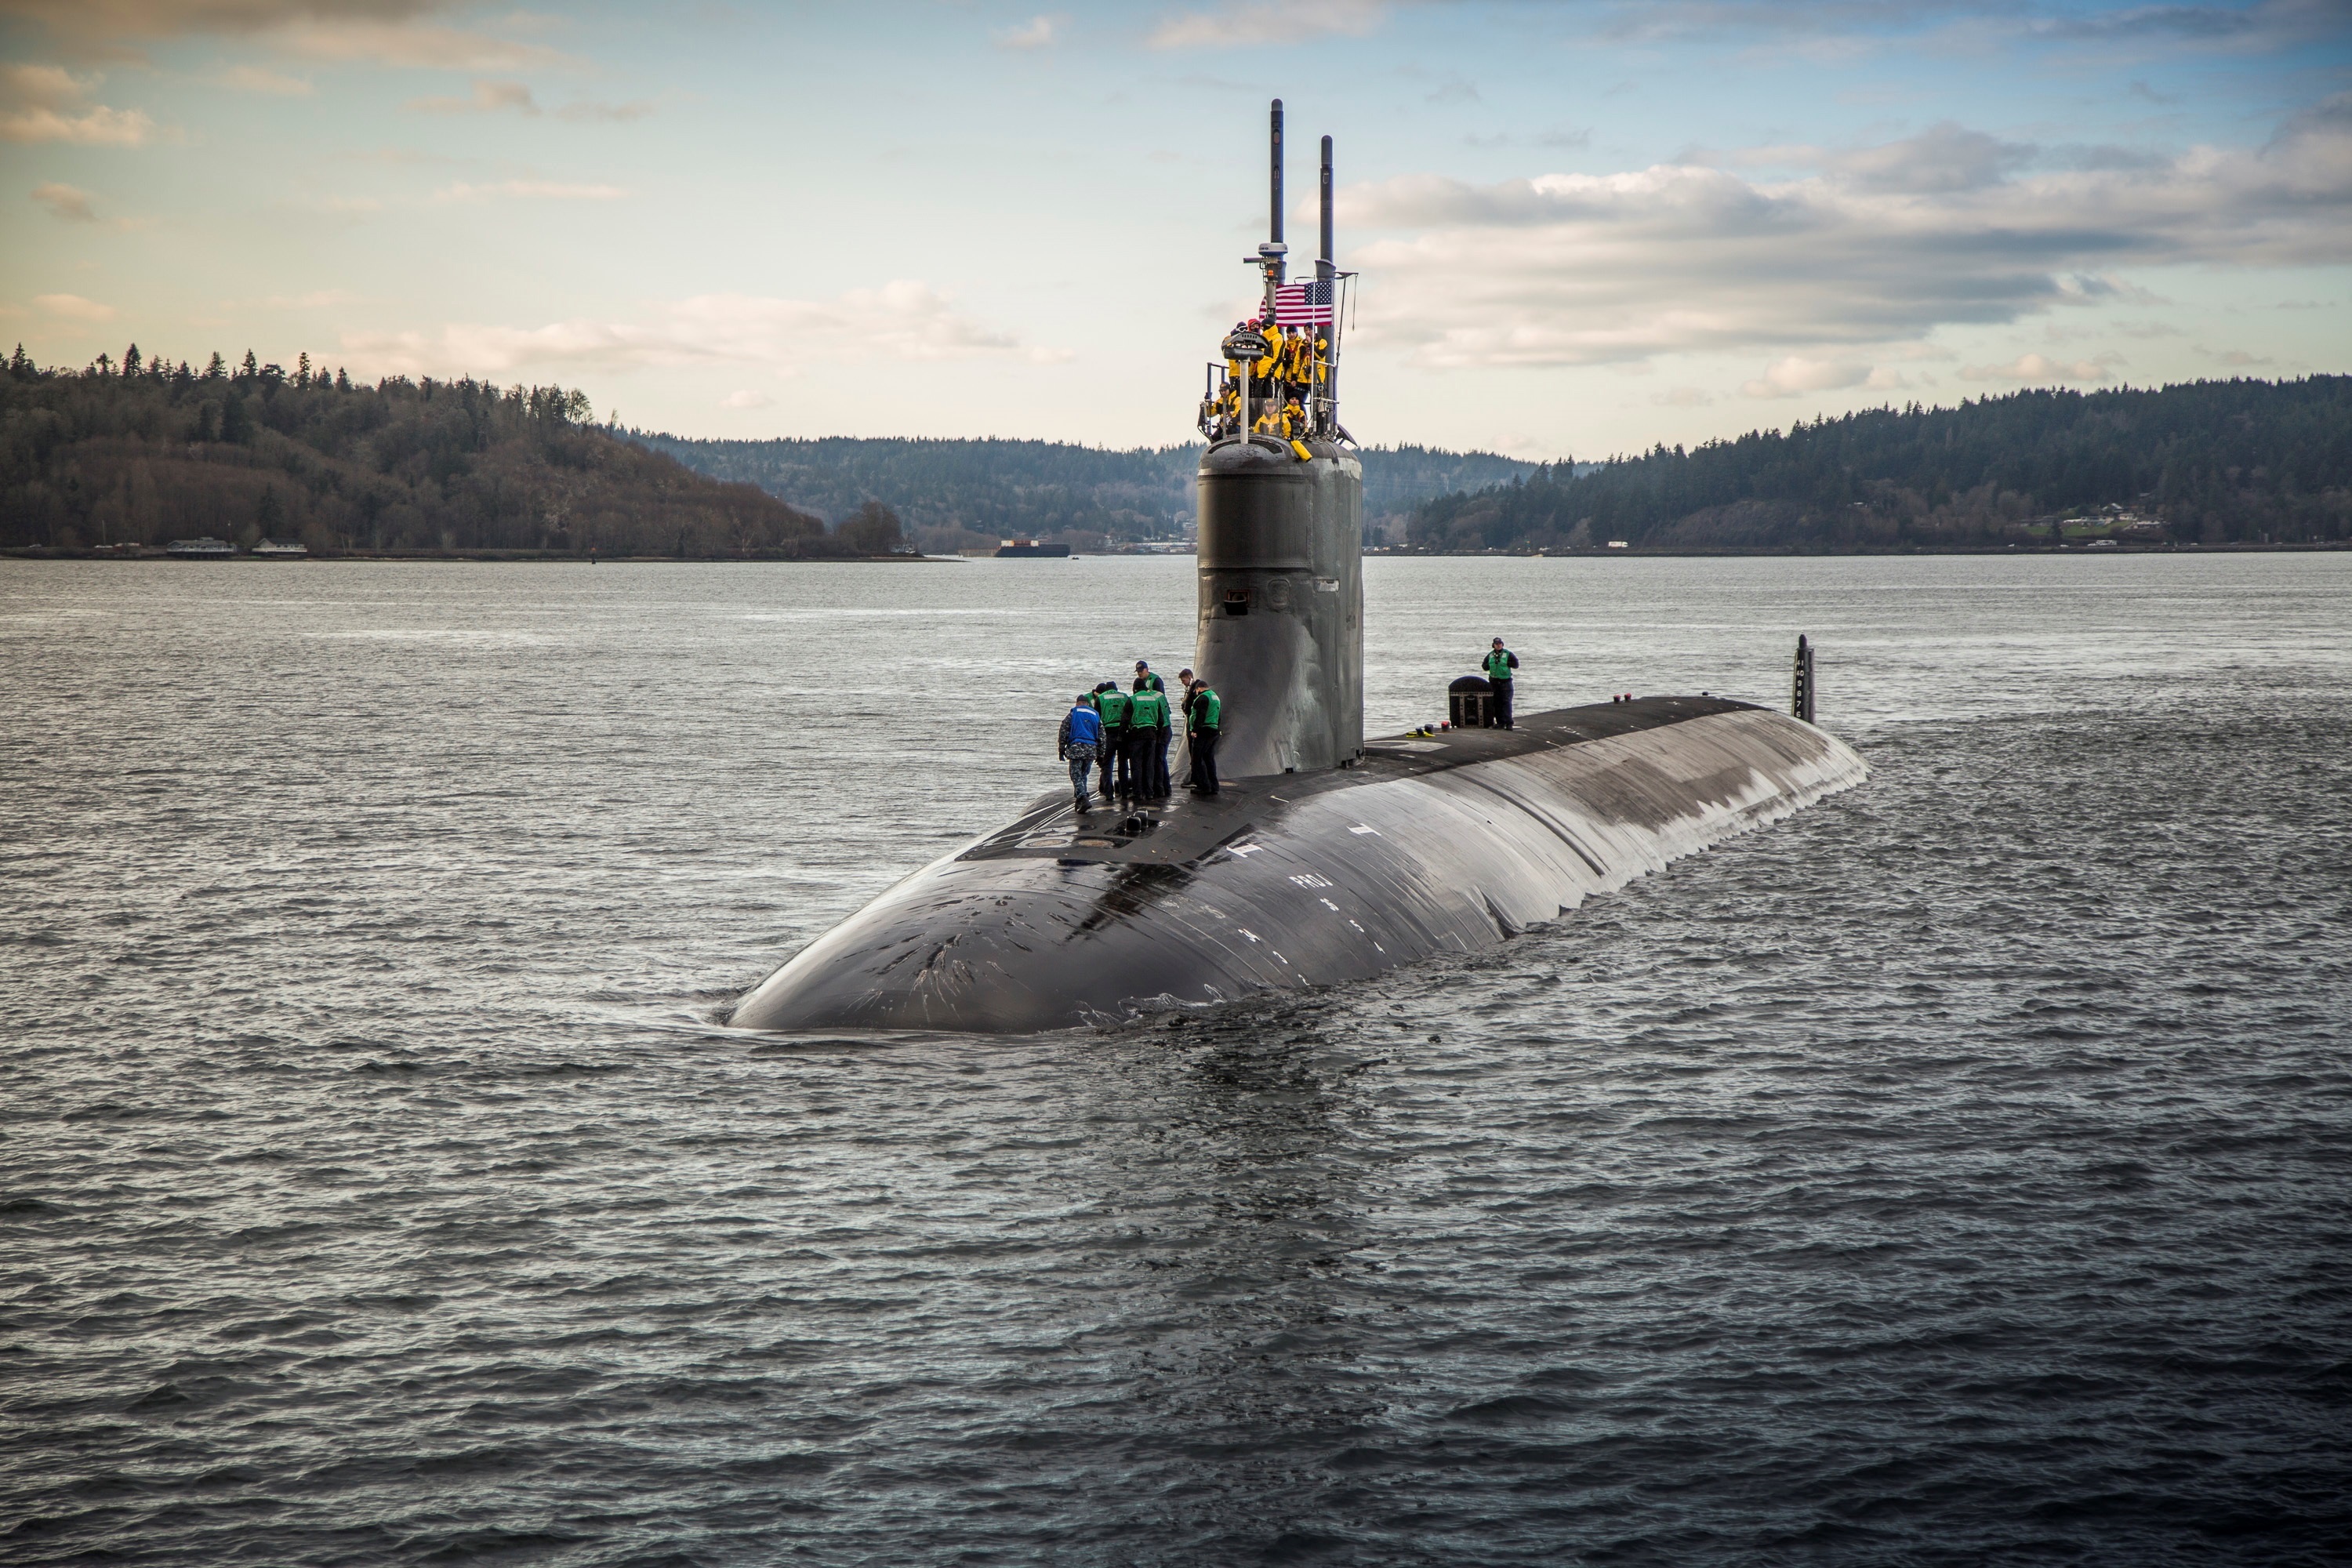 El submarino nuclear estadounidense "USS Connecticut", que golpeó "un objeto" mientras navegaba por aguas del Indo-Pacífico, dejando al menos once militares heridos